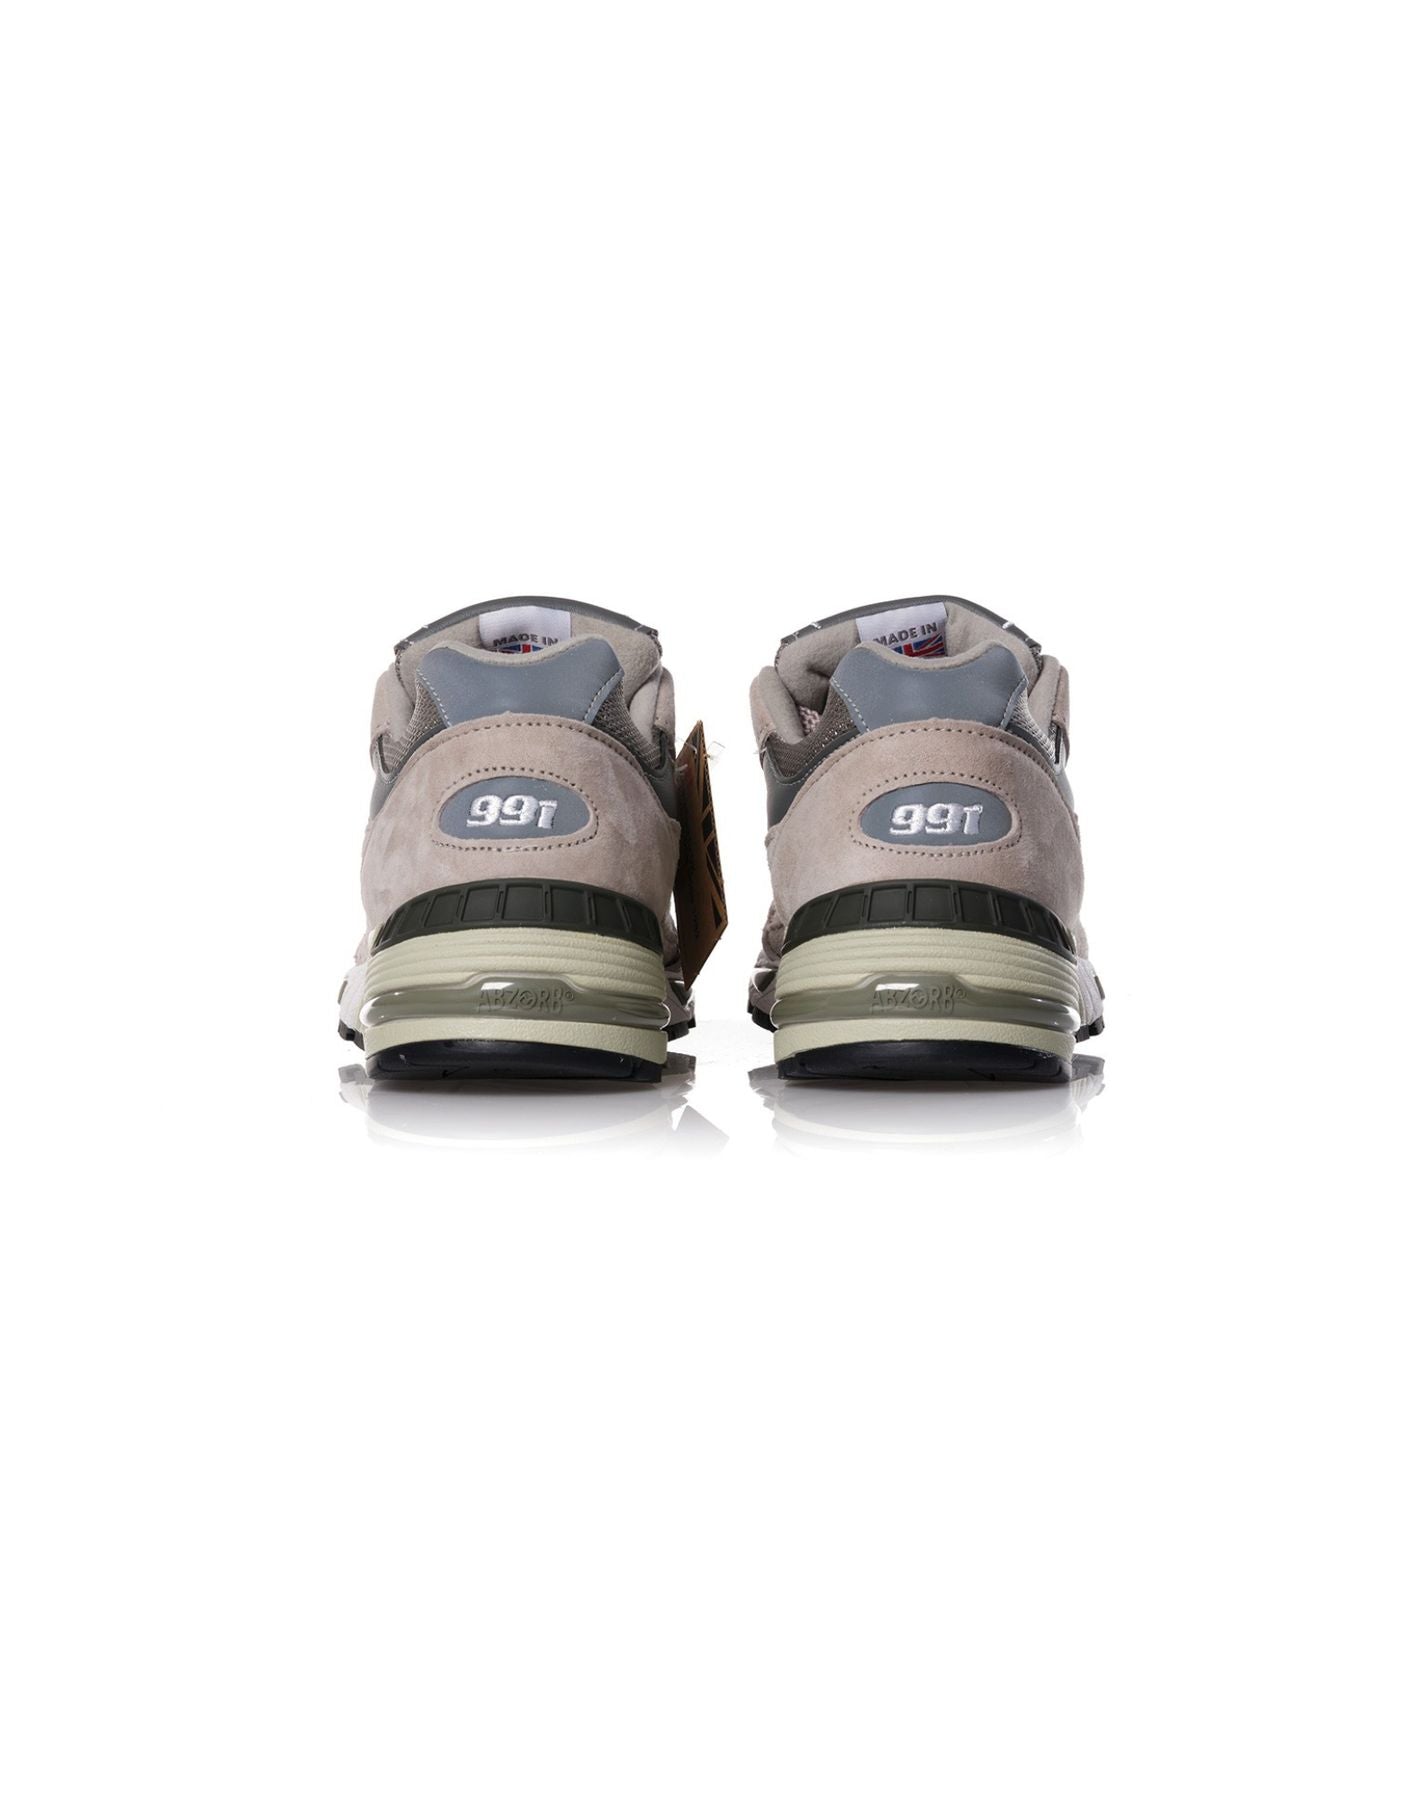 Schuhe für Männer M991gl NEW BALANCE